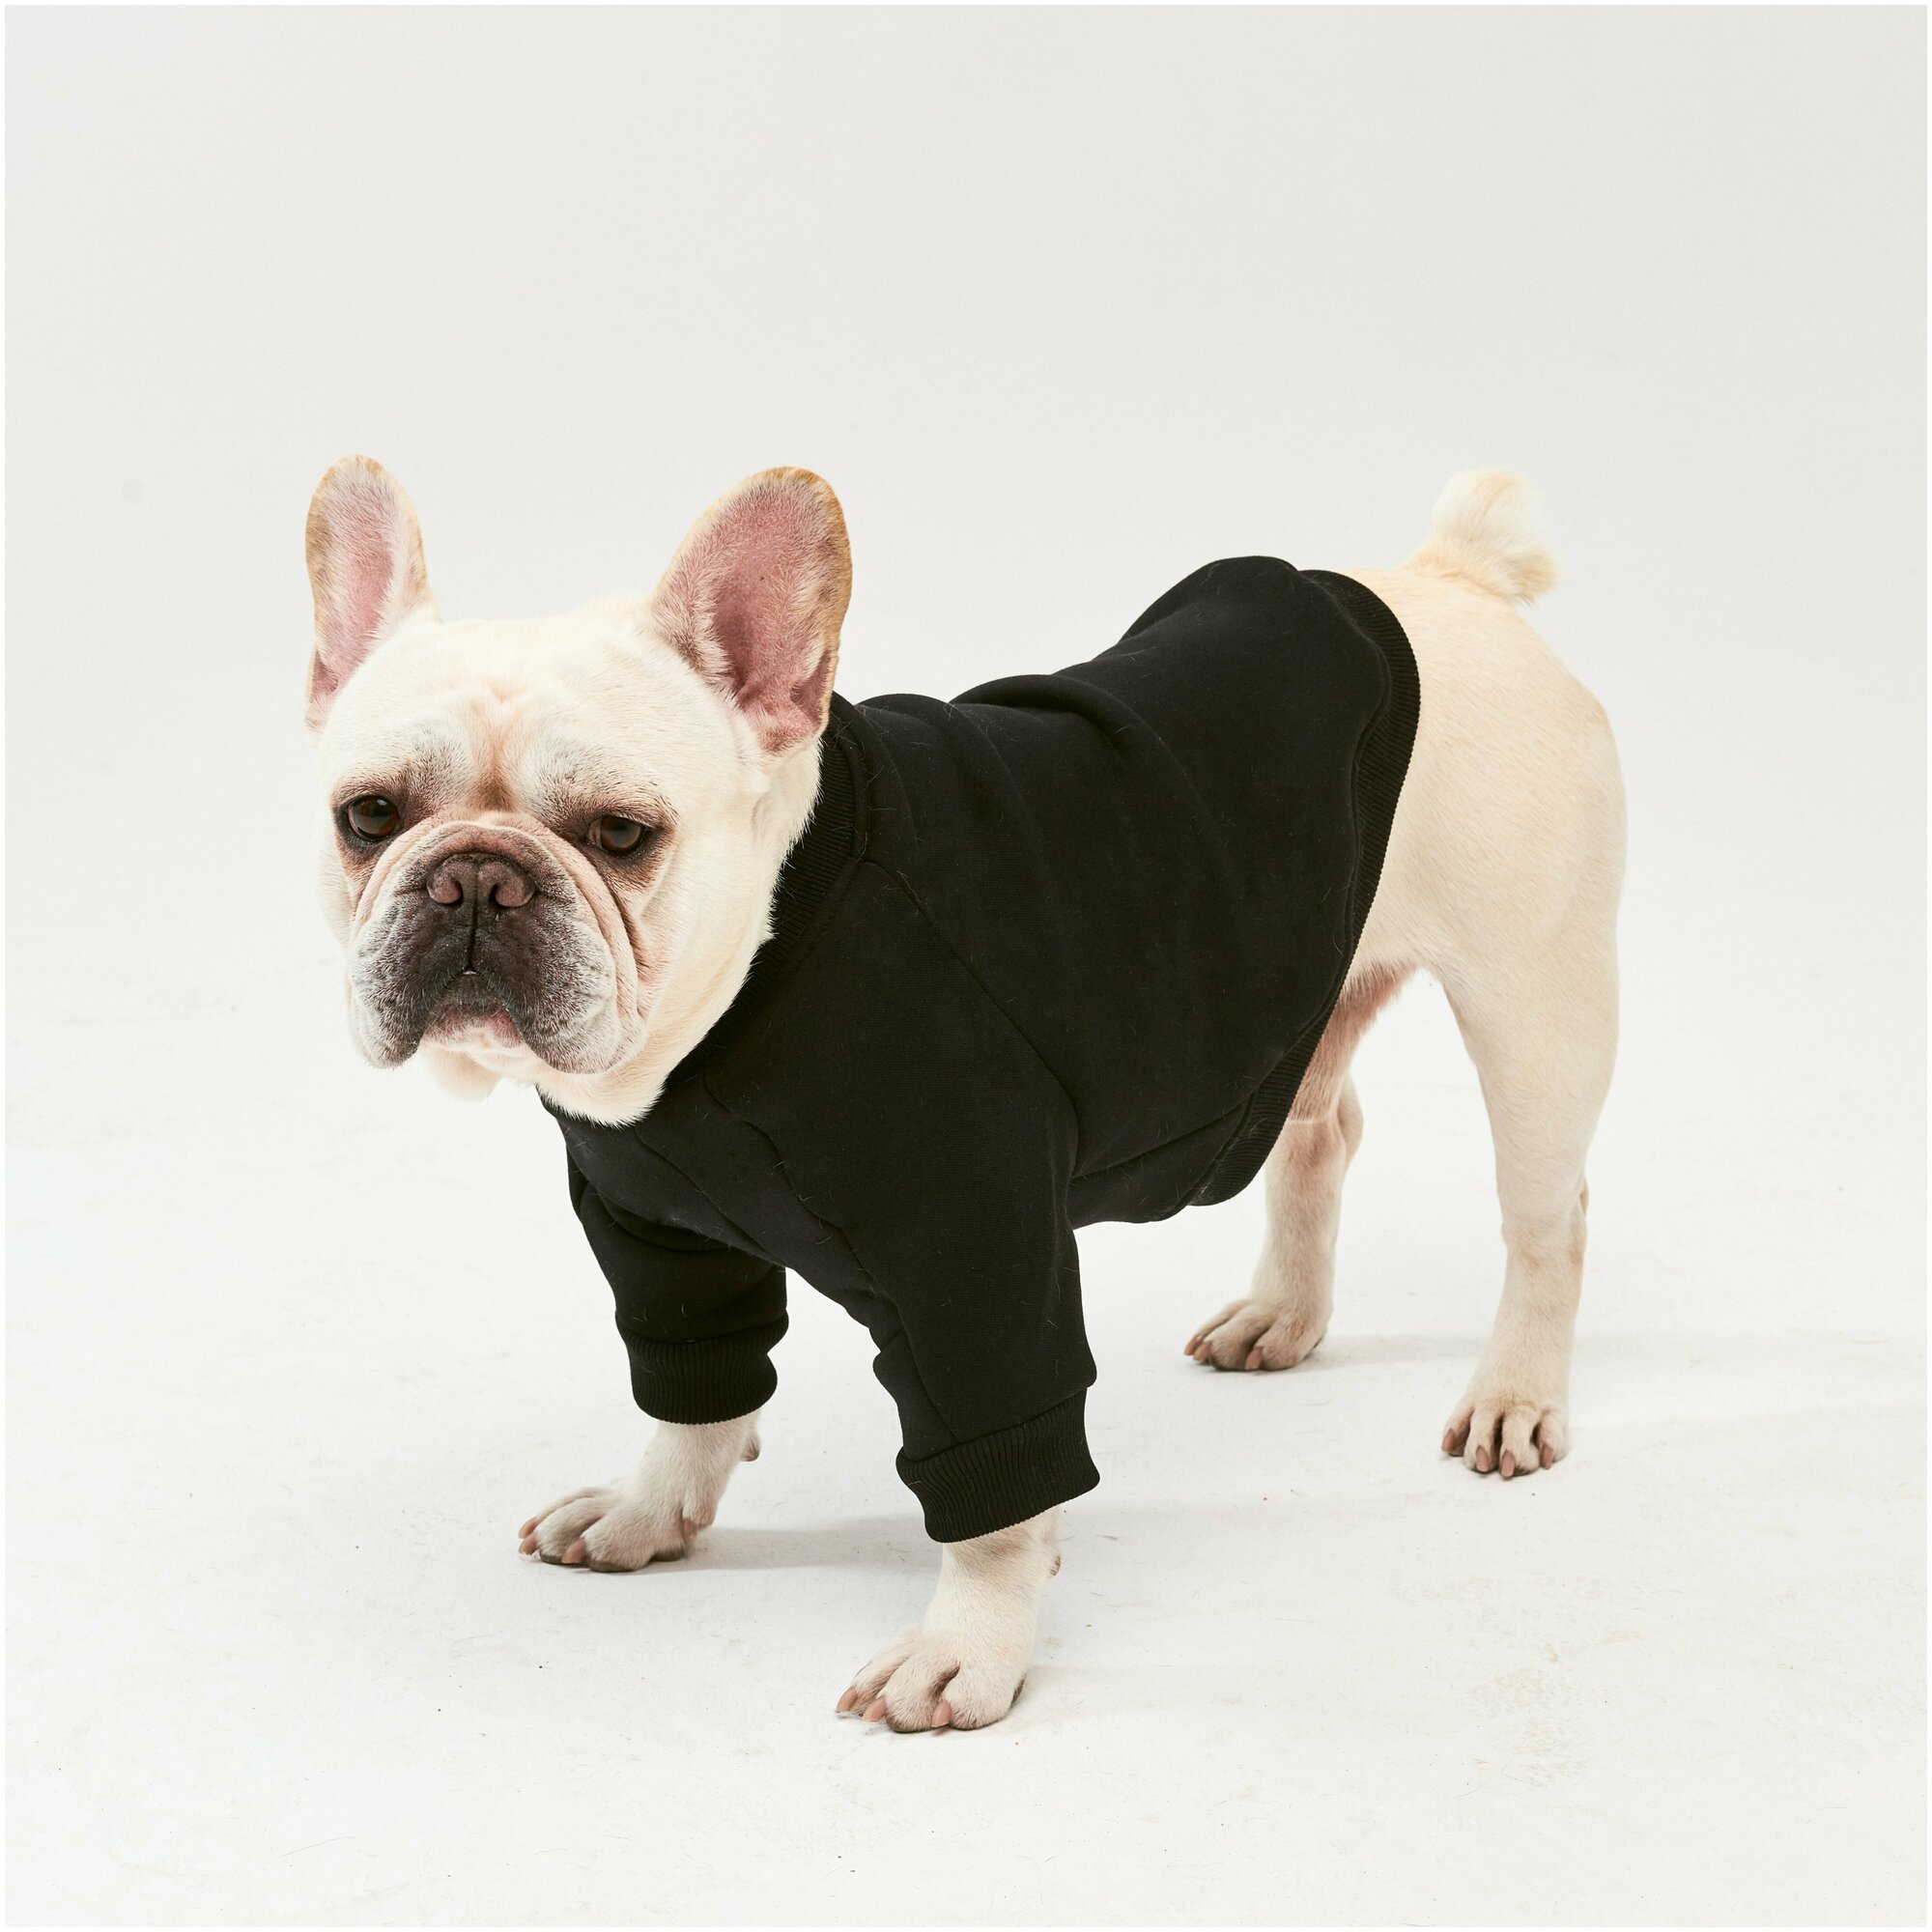 WOOFLER / Свитшот для французского бульдога, бультерьера и амстаффа, толстовка из футера, одежда для собак, цвет черный, размер S32